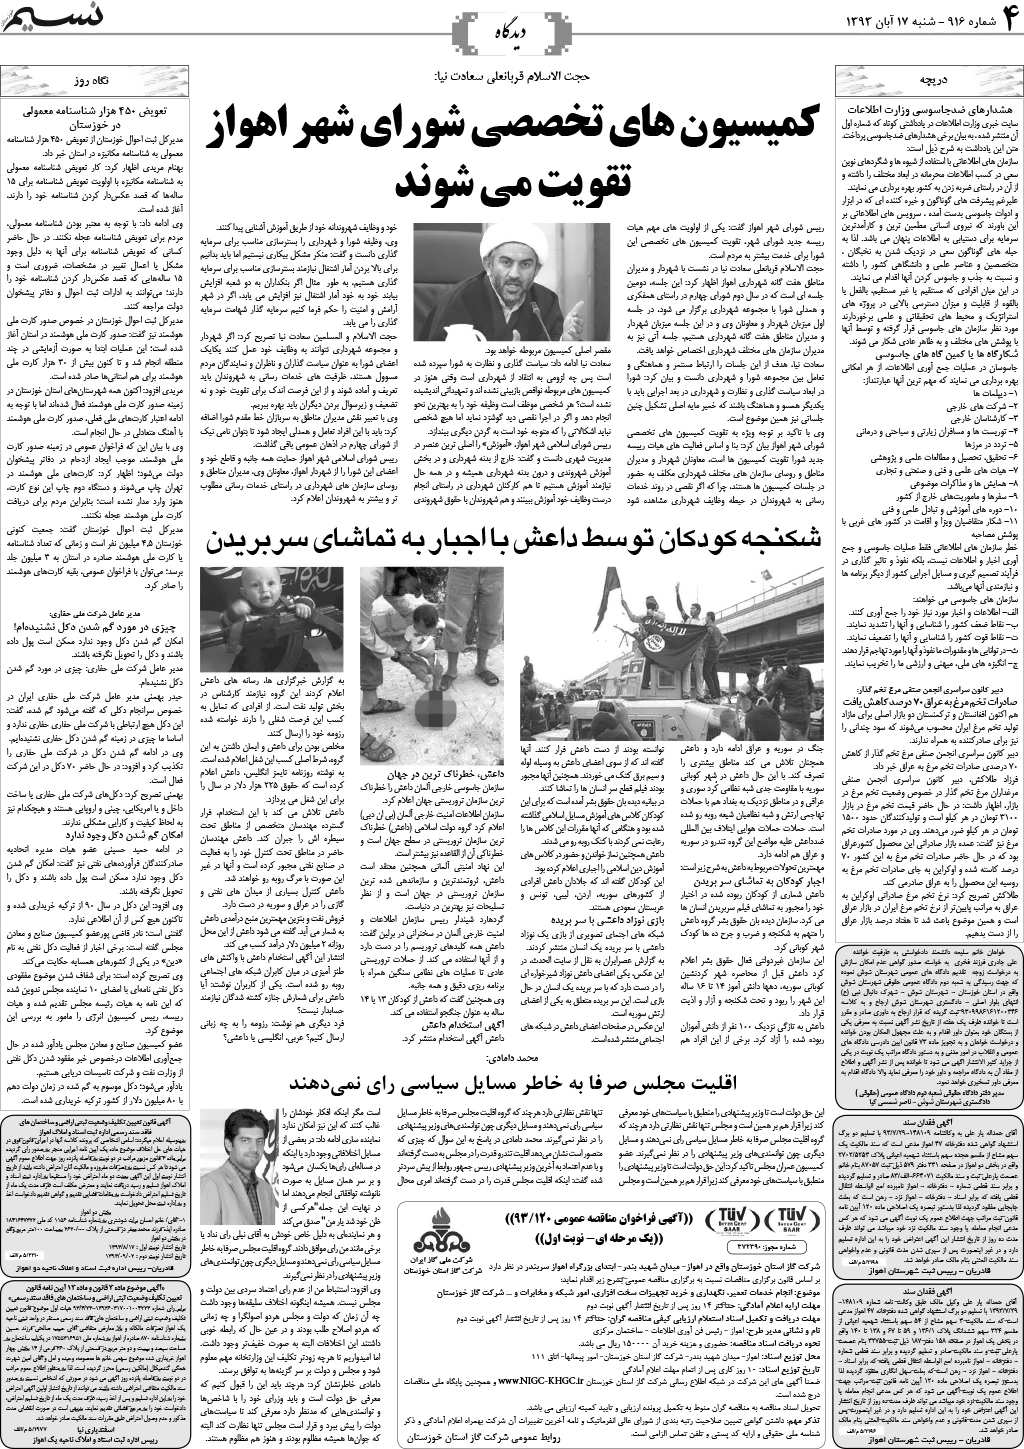 صفحه دیدگاه روزنامه نسیم شماره 916